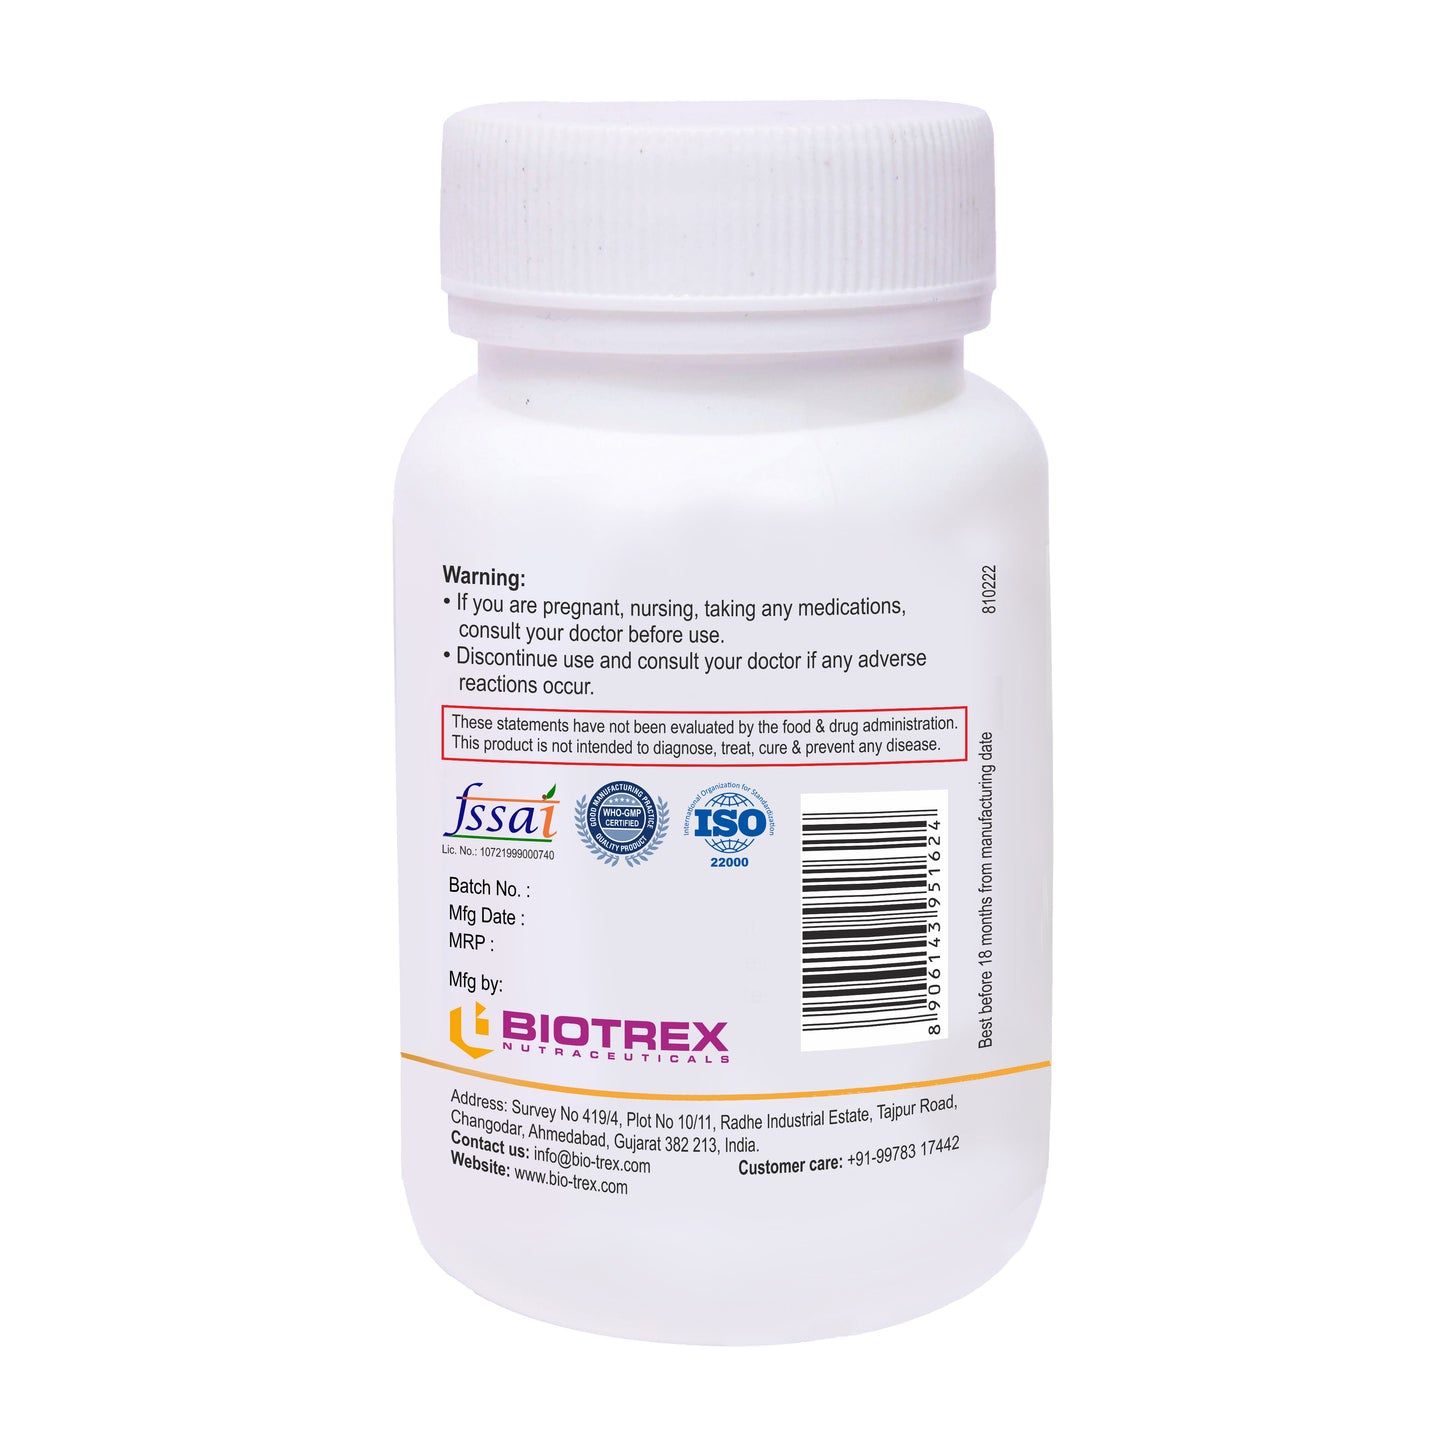 Biotrex Vitamin K2+D3 - 60 Capsules